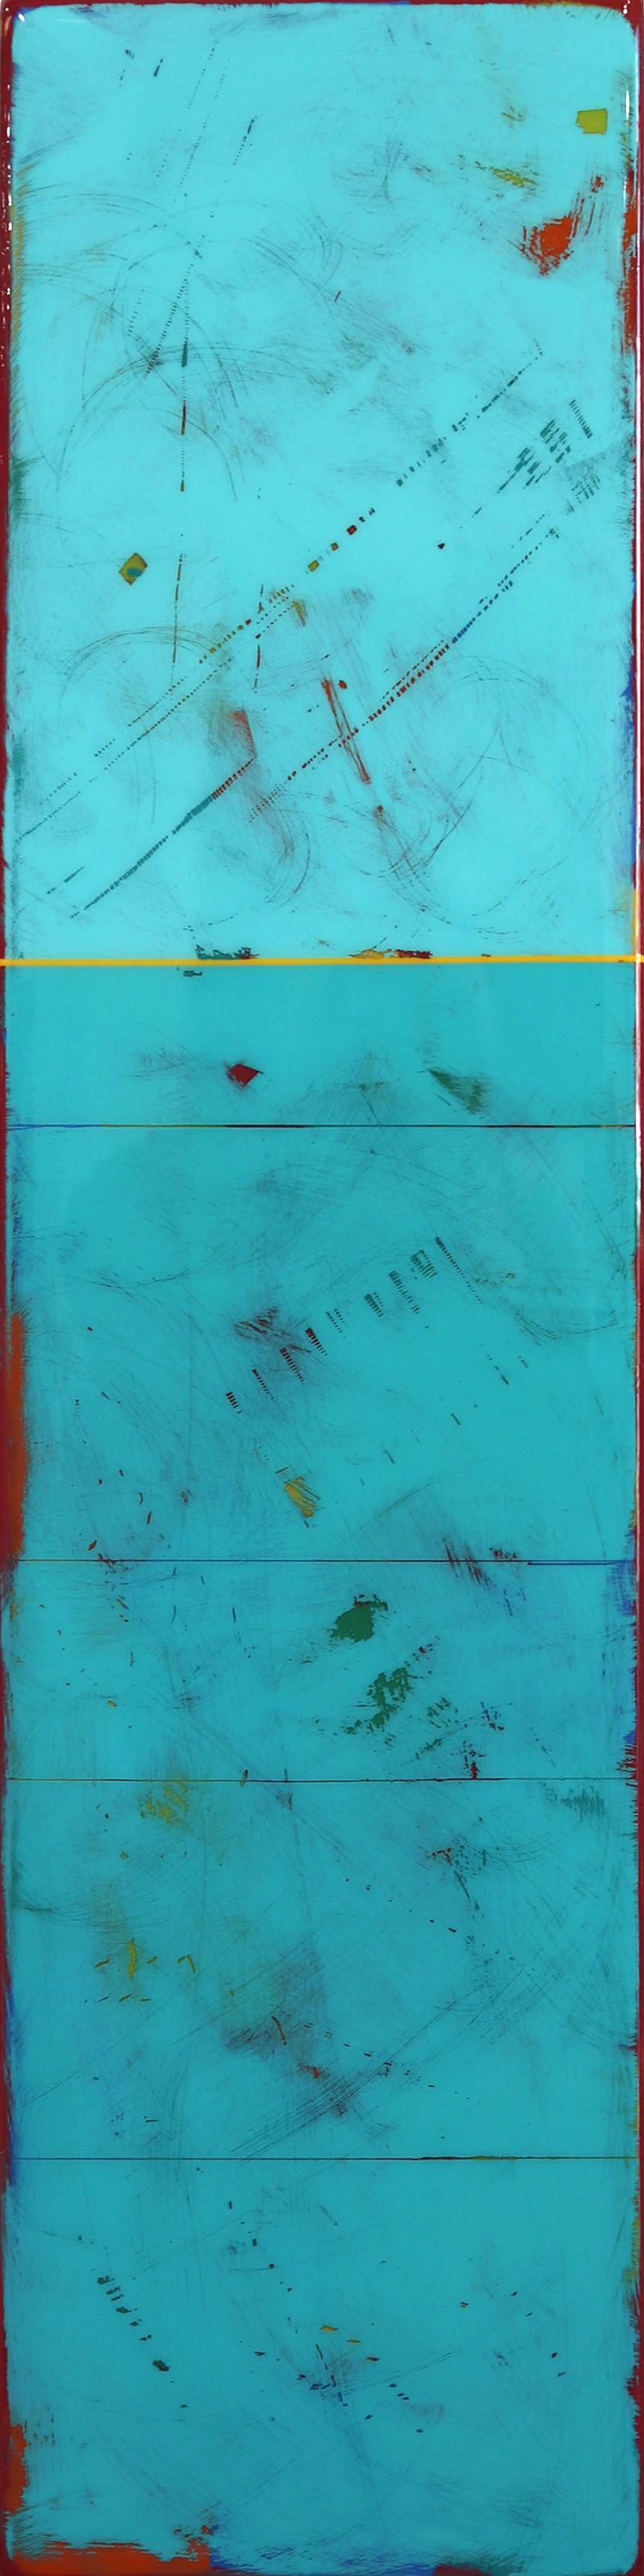 Tache solaire 80  - The Moderns Acrylic Two Tone Aqua Blue Resin Artwork (œuvre d'art moderne en résine acrylique bicolore bleu aquatique)